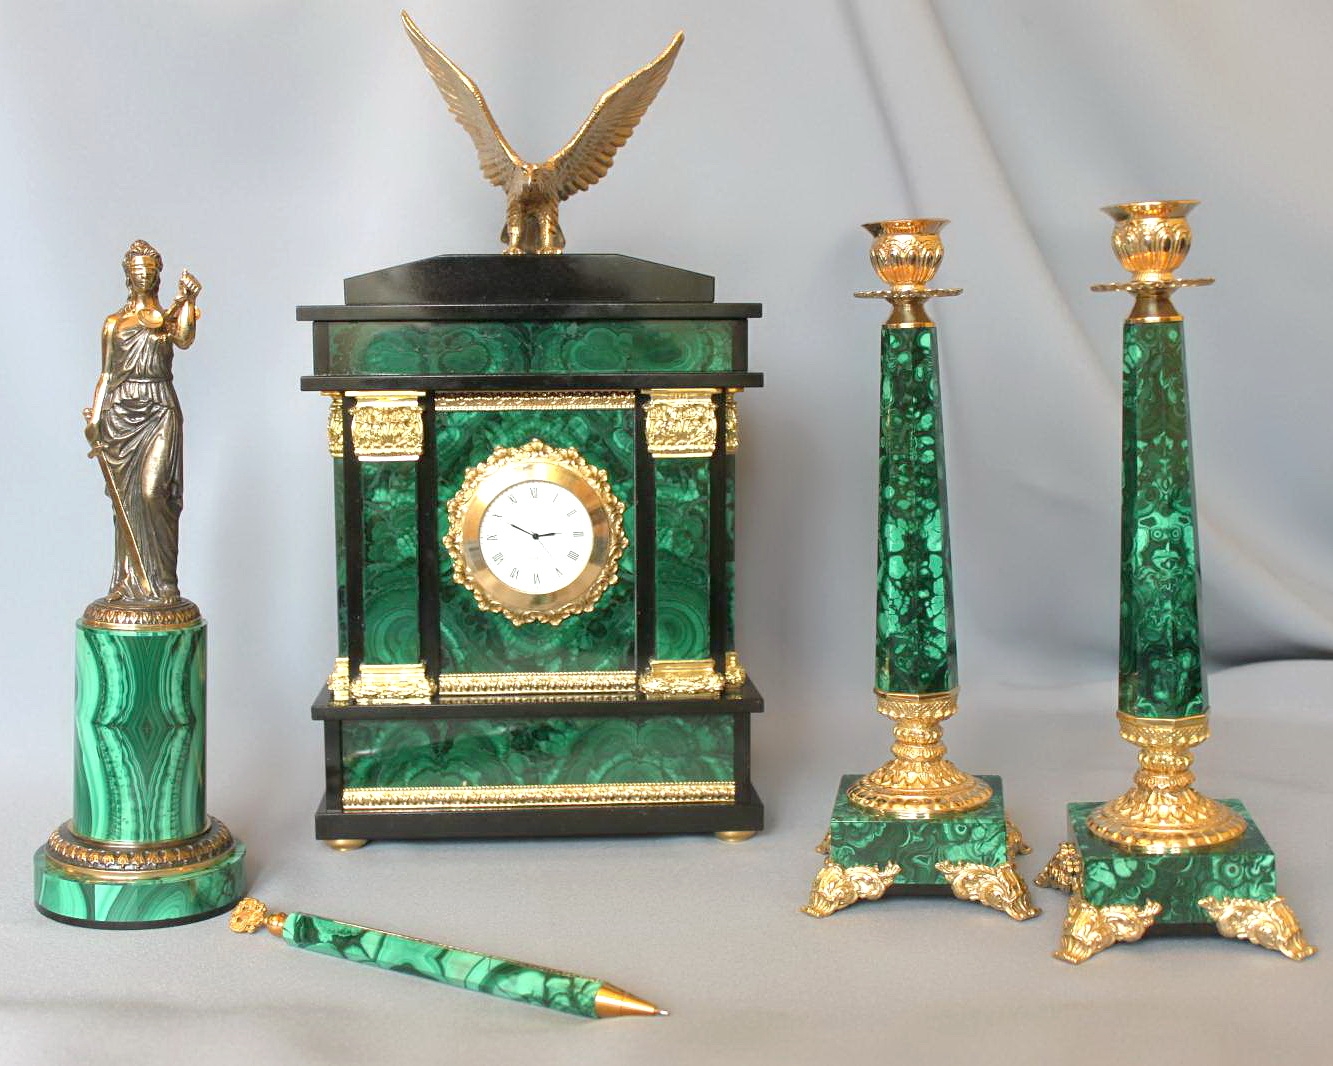 Каминный набор из малахита:   часы с орлом, два подсвечника,  скульптура Фемиды, ручка для письма.